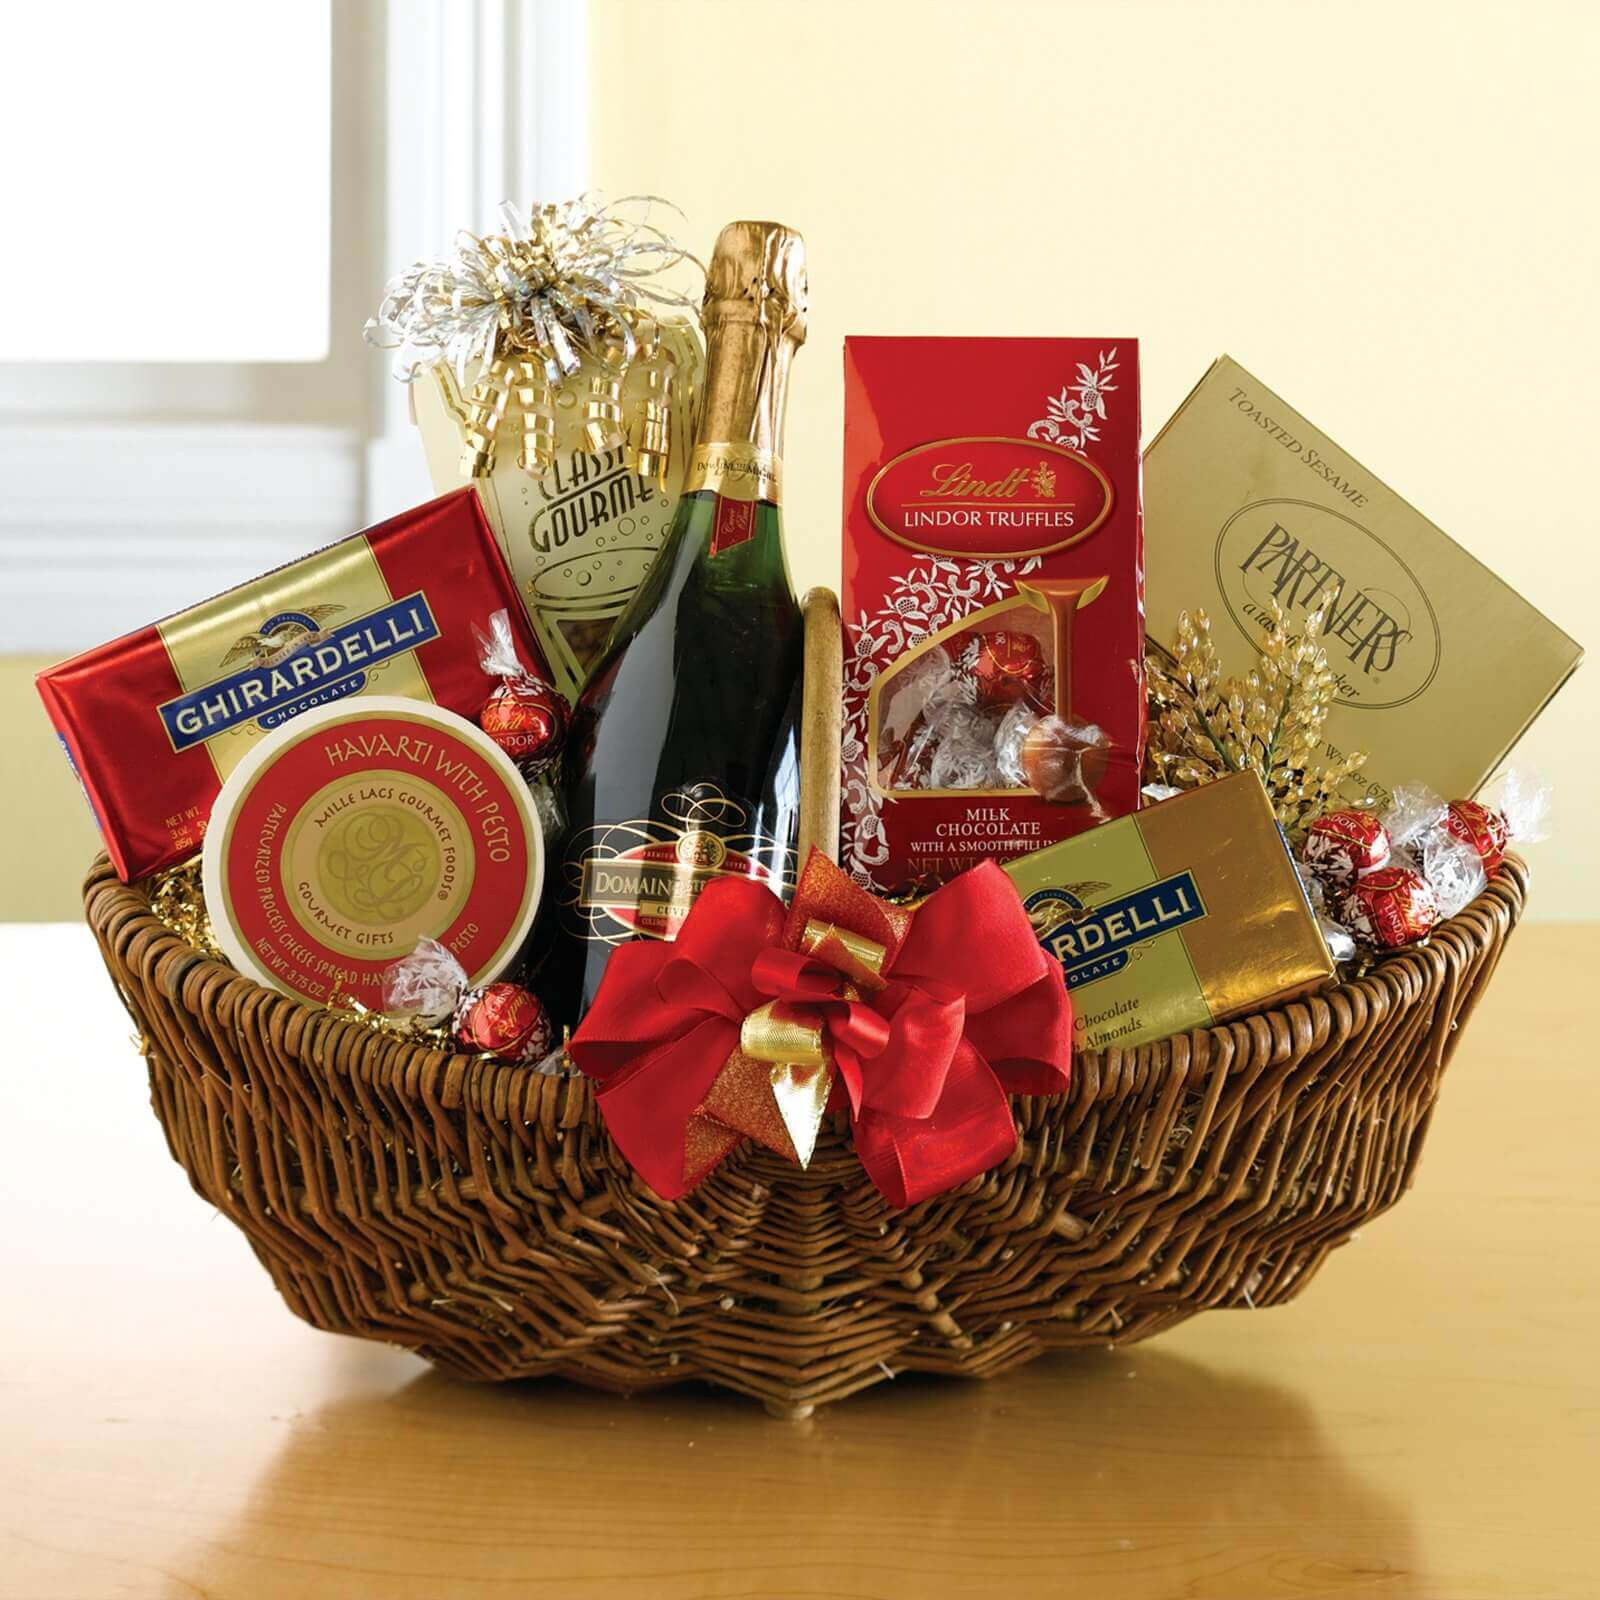 Box Valentine'S Day Gift Ideas
 Best Valentine s Day Gift Baskets Boxes & Gift Sets Ideas